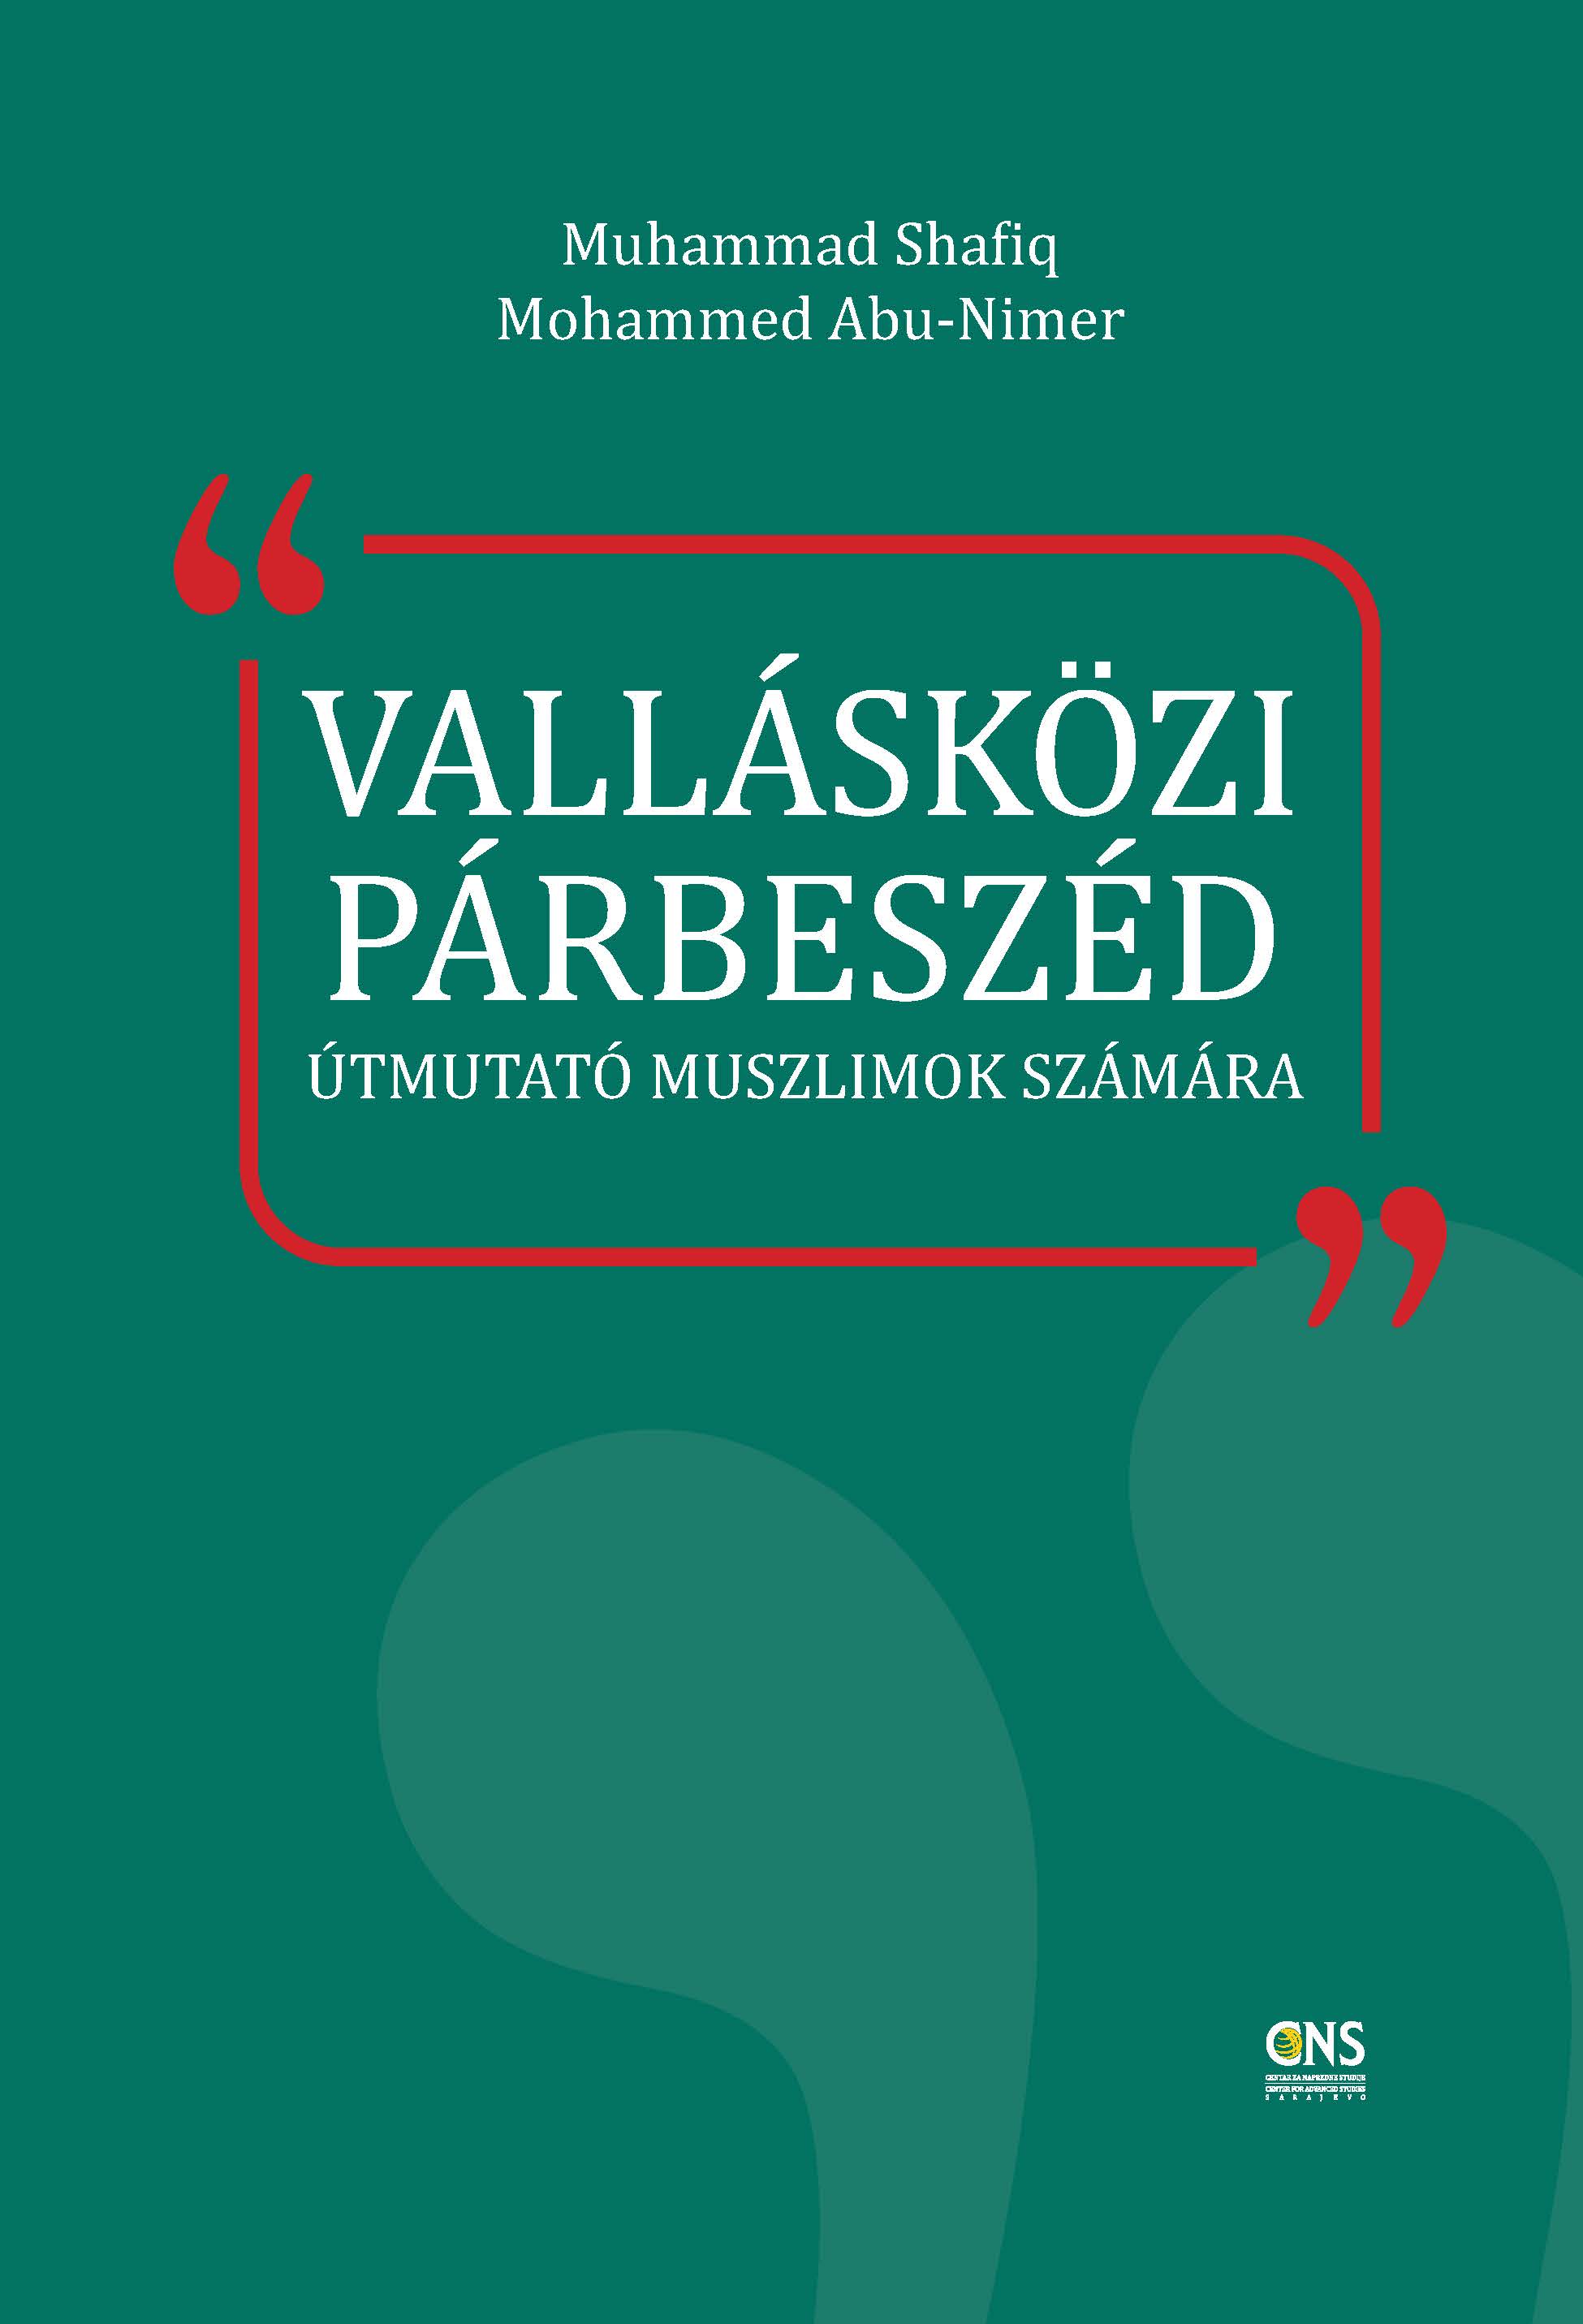 (Hungarian Language) Vallásközi párbeszéd: útmutató muszlimok számára (Interfaith Dialogue: A Guide For Muslims)